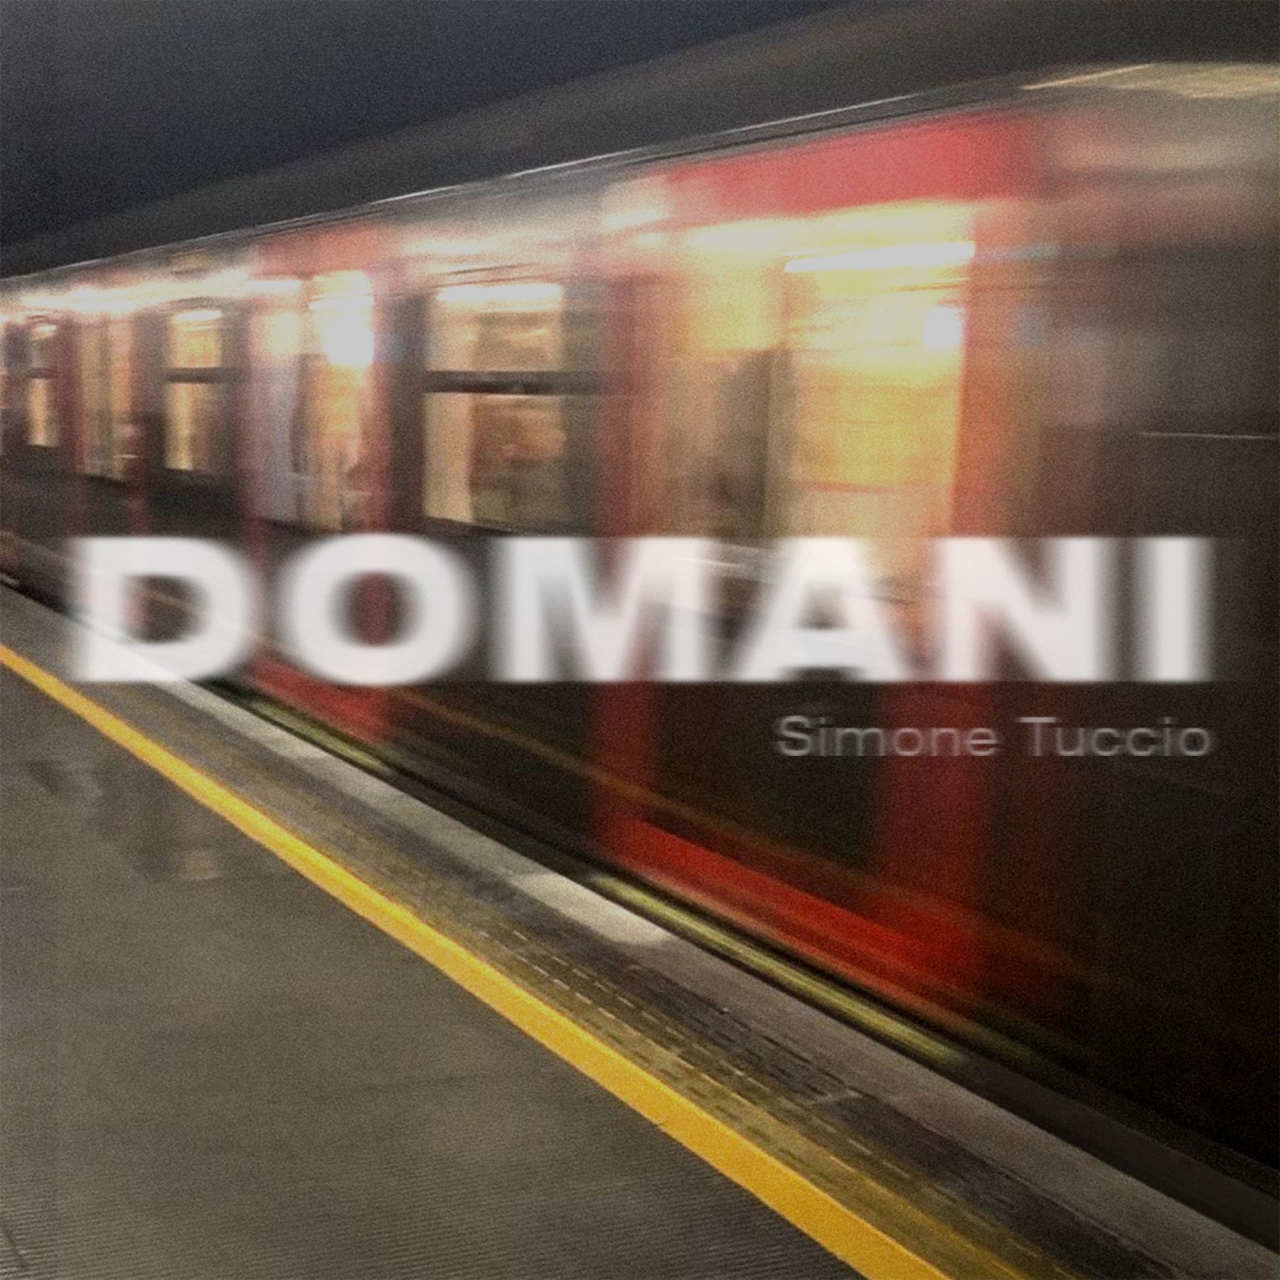 Simone Tuccio - “Domani” il nuovo singolo in uscita il 3 febbraio